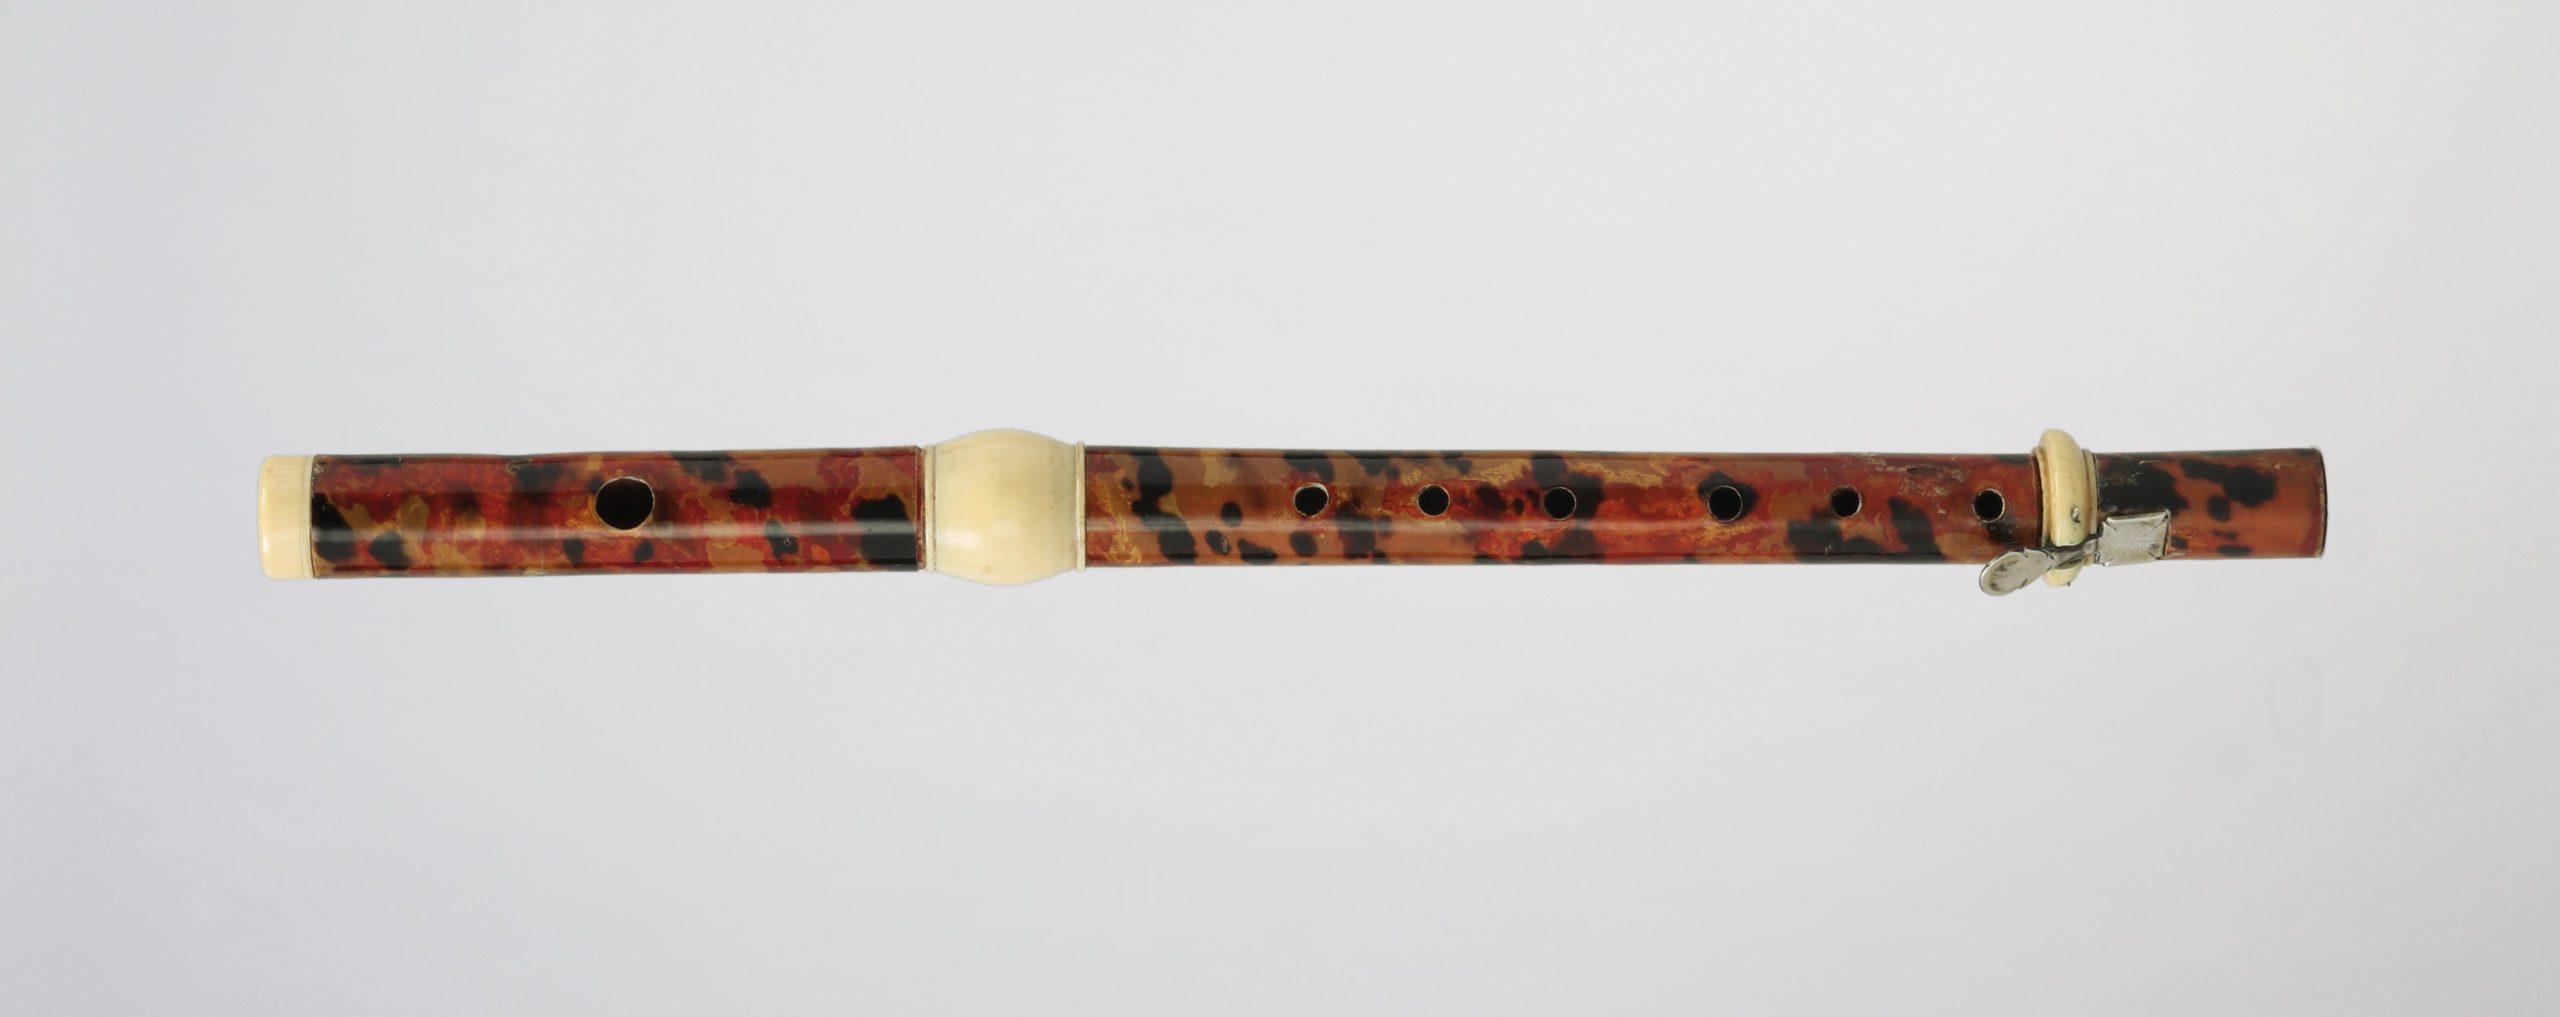 Flûte piccolo en placage écaille de tortue sur bois, trois bagues ivoire dont une fendue, une clef argent, attribuée à Johann HEITZ, début XVIIIème.